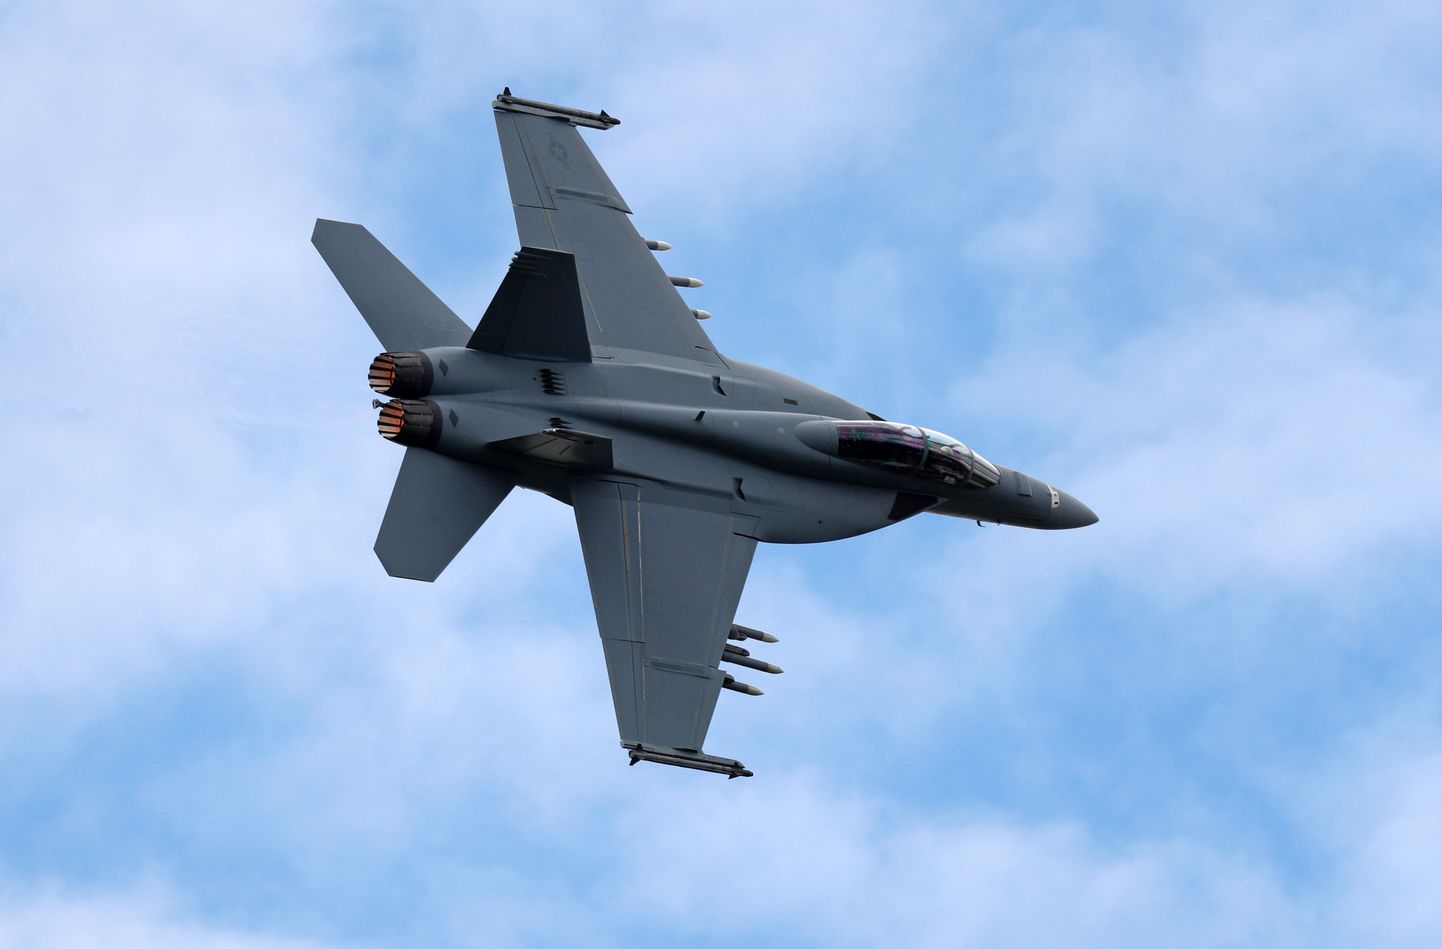 Soome praegused Super-Hornet- tüüpi hävitajas USAst.